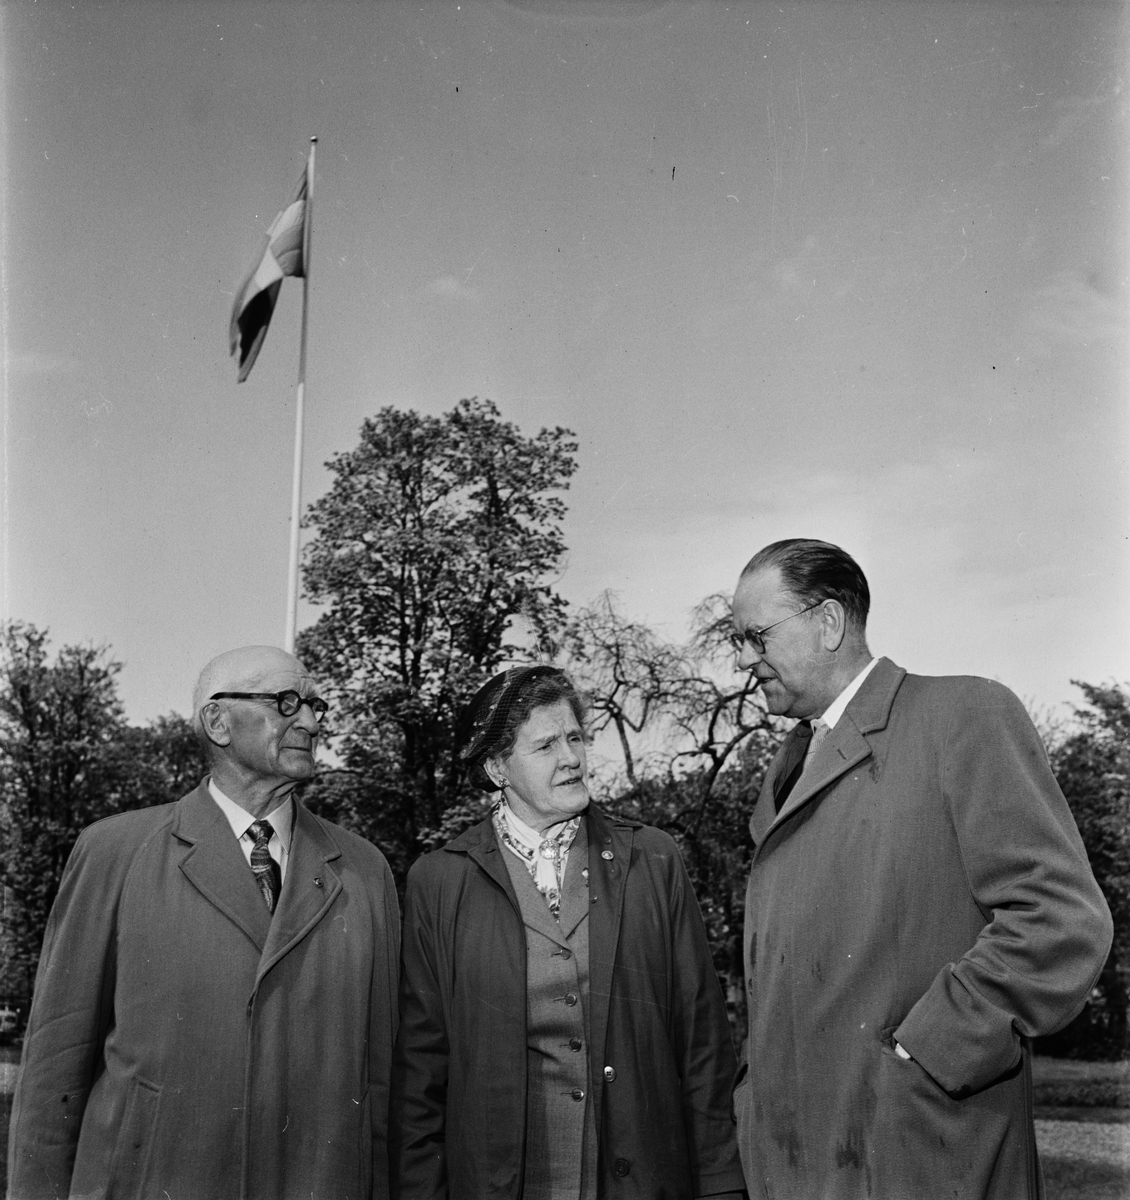 Österby Socialdemokratiska Arbetarkommuns jubileum, Österby, Uppland 1955